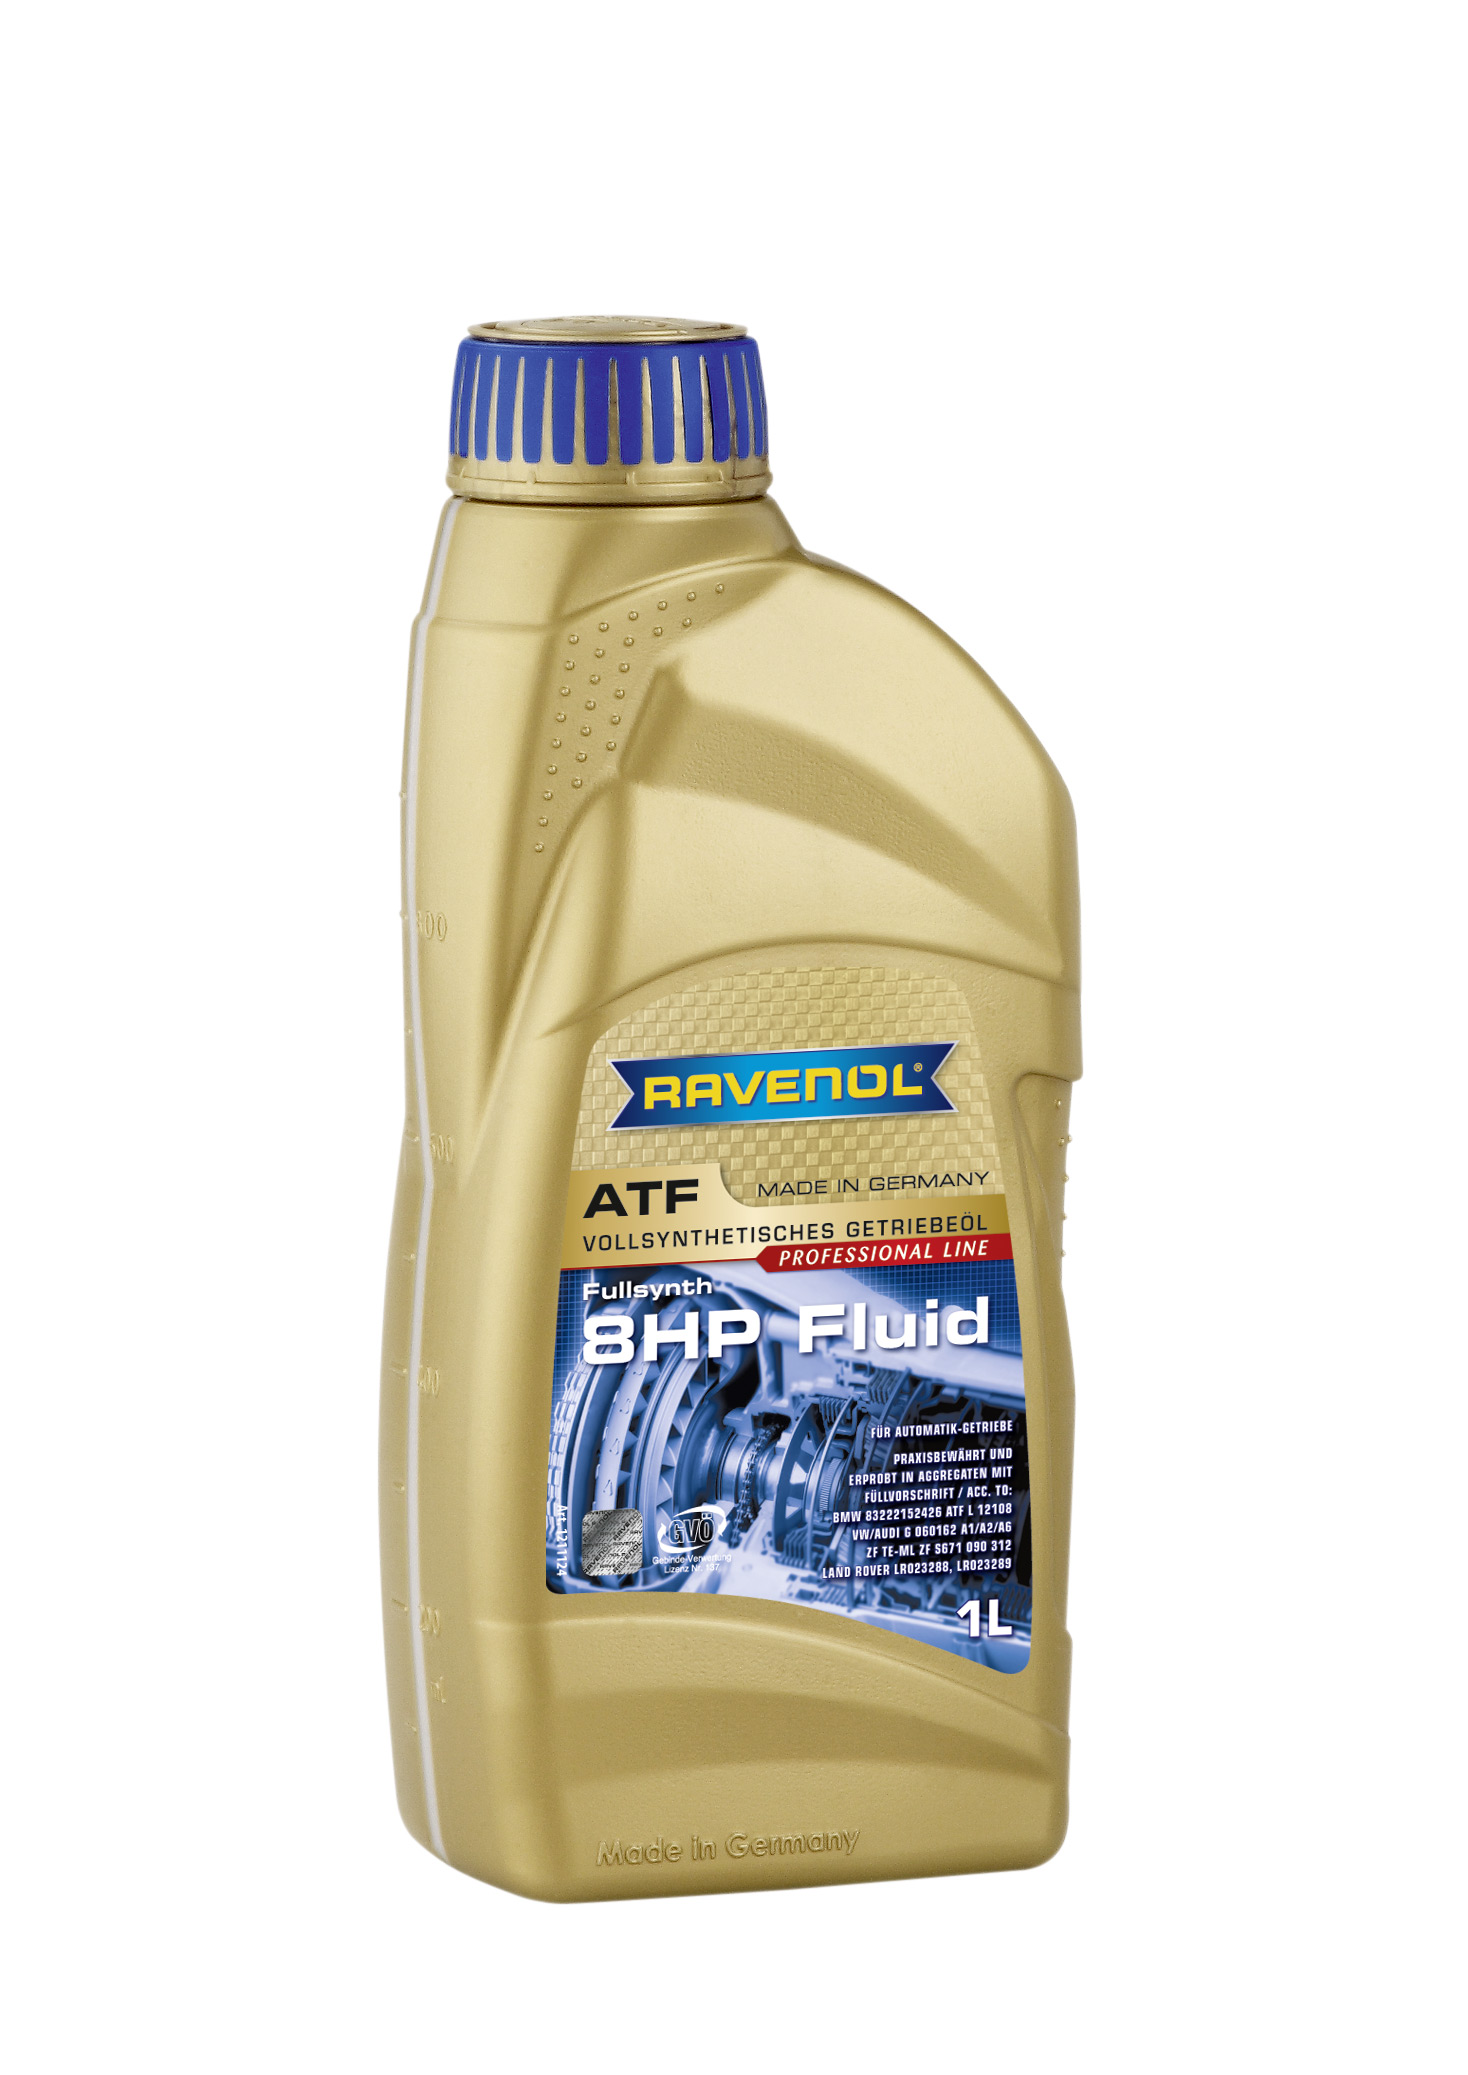 Трансмиссионное масло RAVENOL ATF 8 HP Fluid (1л) new 4014835719514